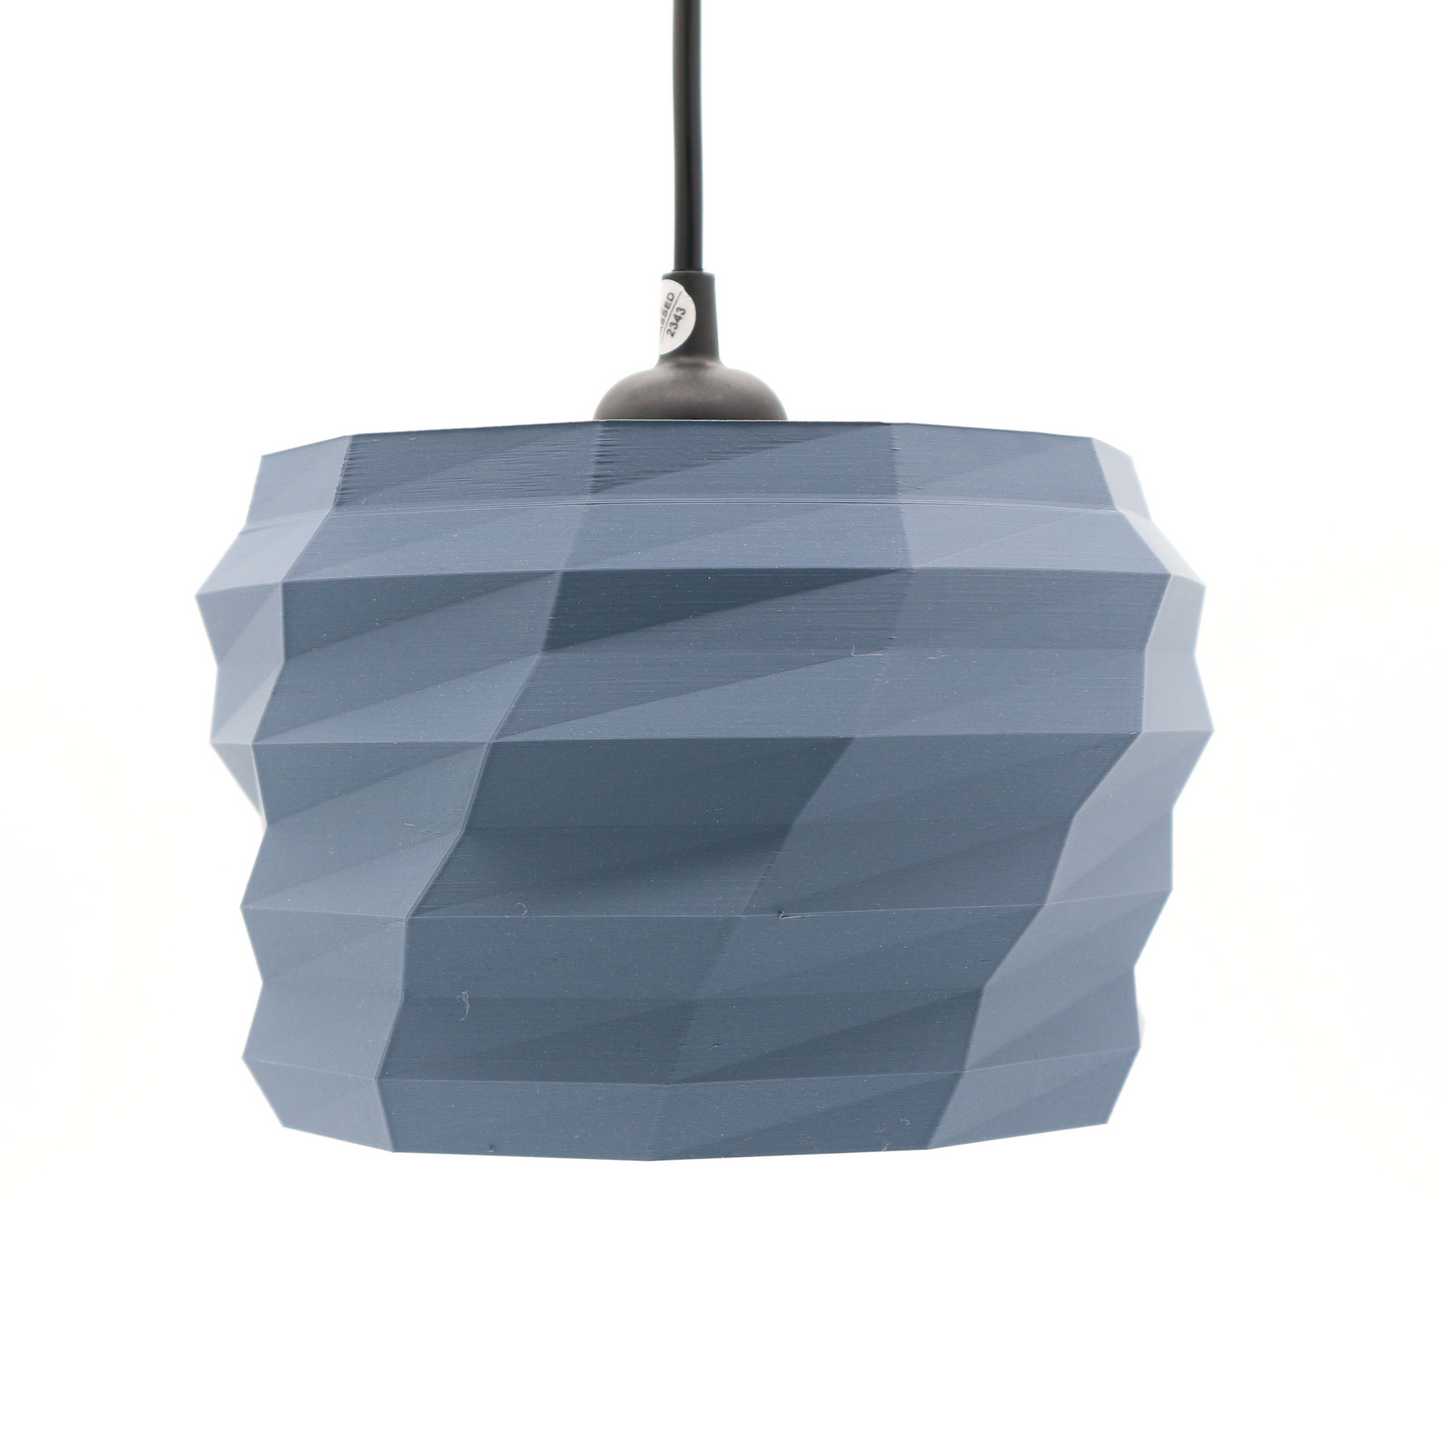 Alberobello design hanglamp grijze uitvoering 